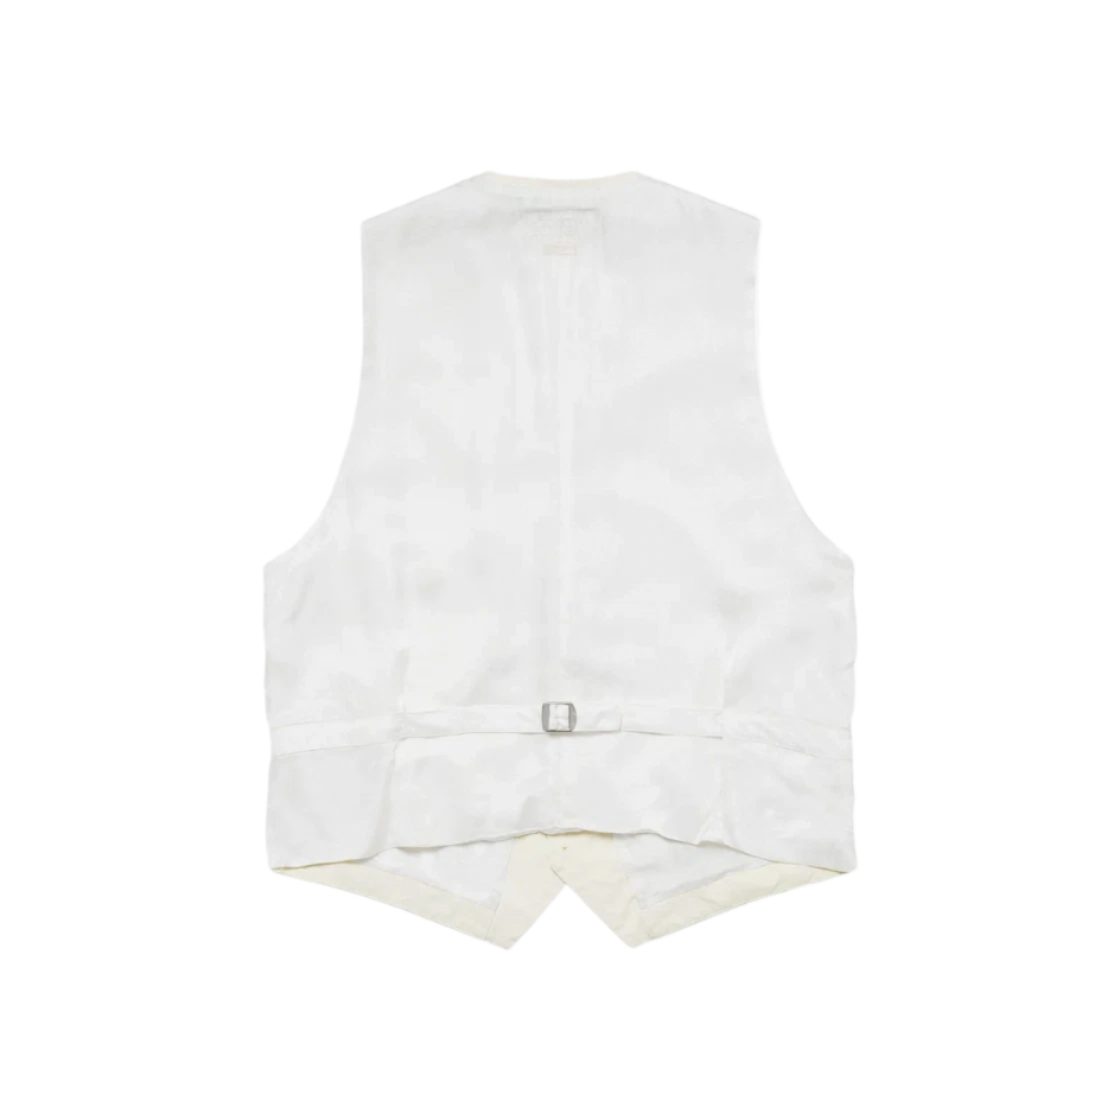 Supreme x MM6 Maison Margiela Washed Cotton Suit Vest Cream - 24SS